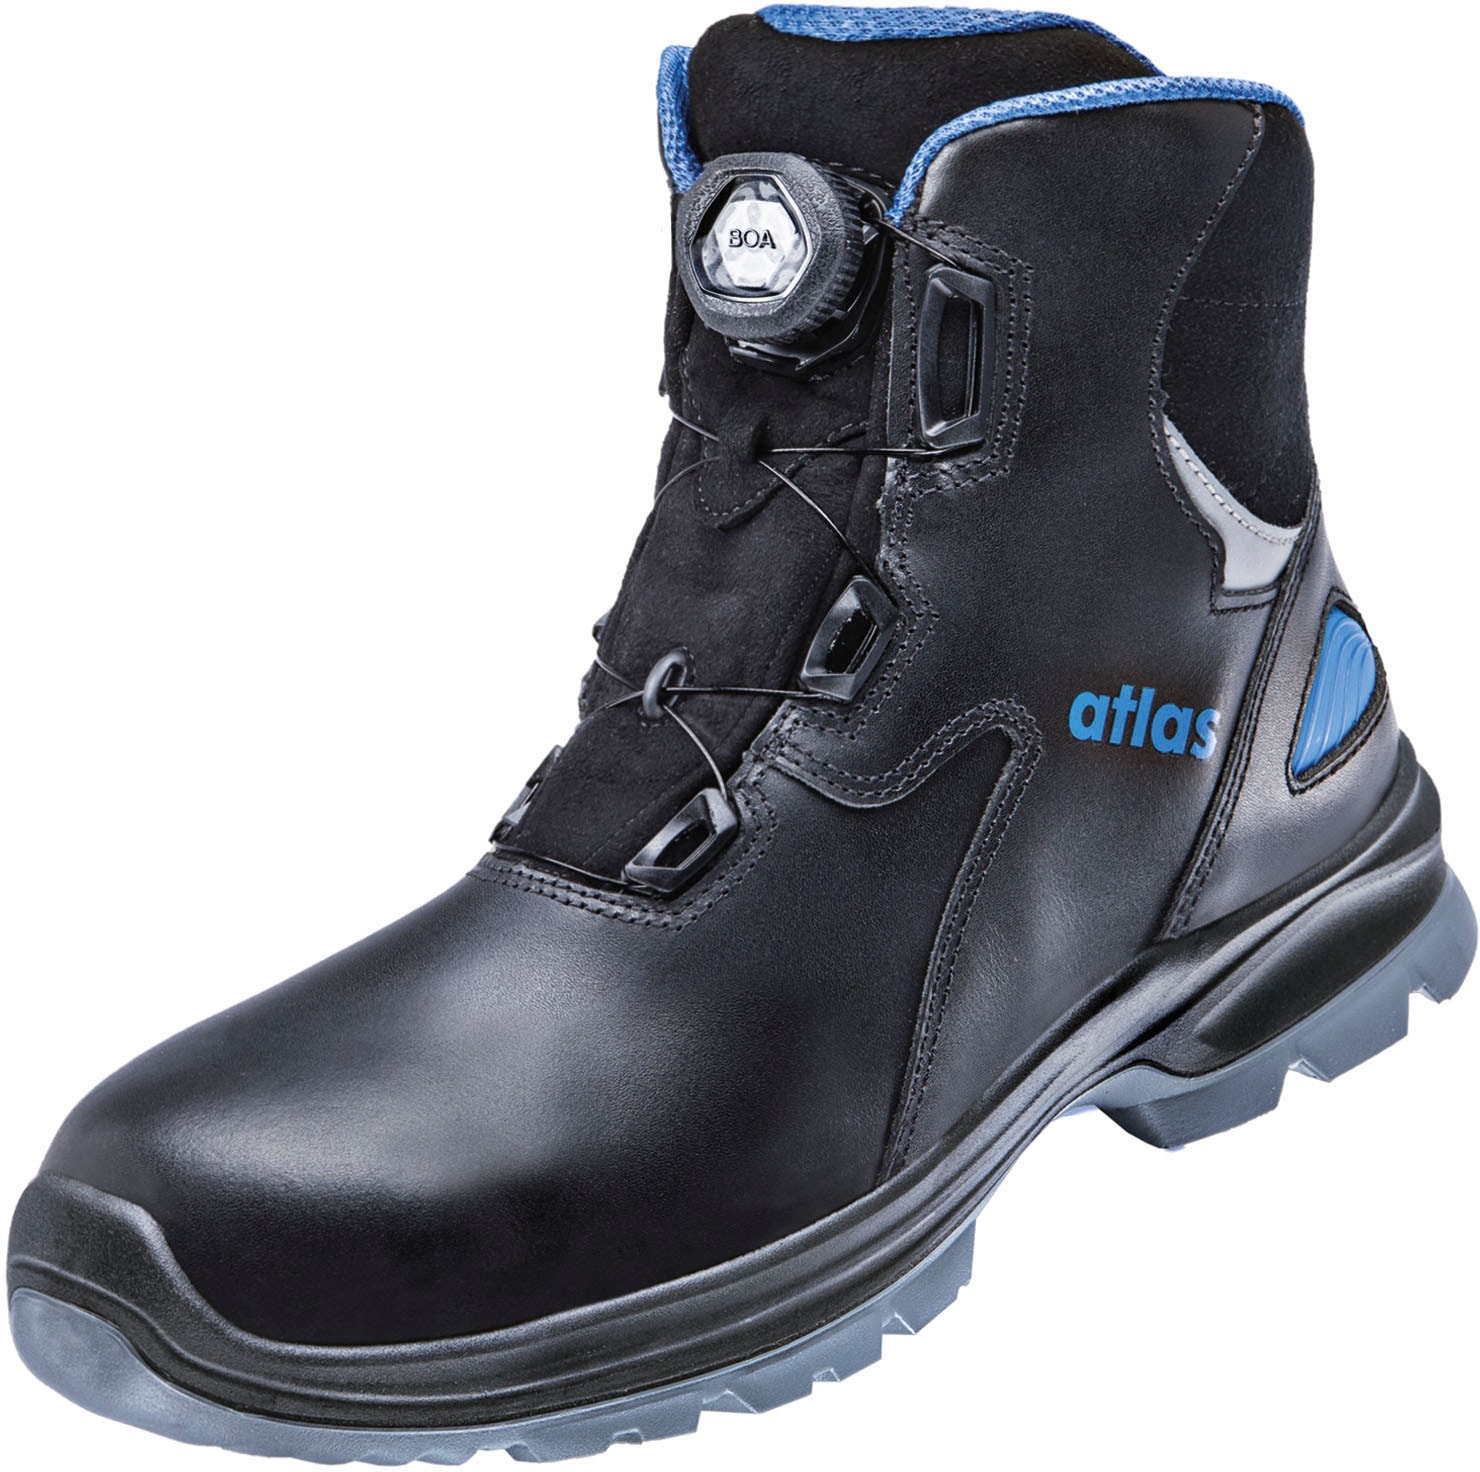 BOA«, Atlas XP online Sicherheitsstiefel Sicherheitsklasse Schuhe S3 bei OTTO »SL9845